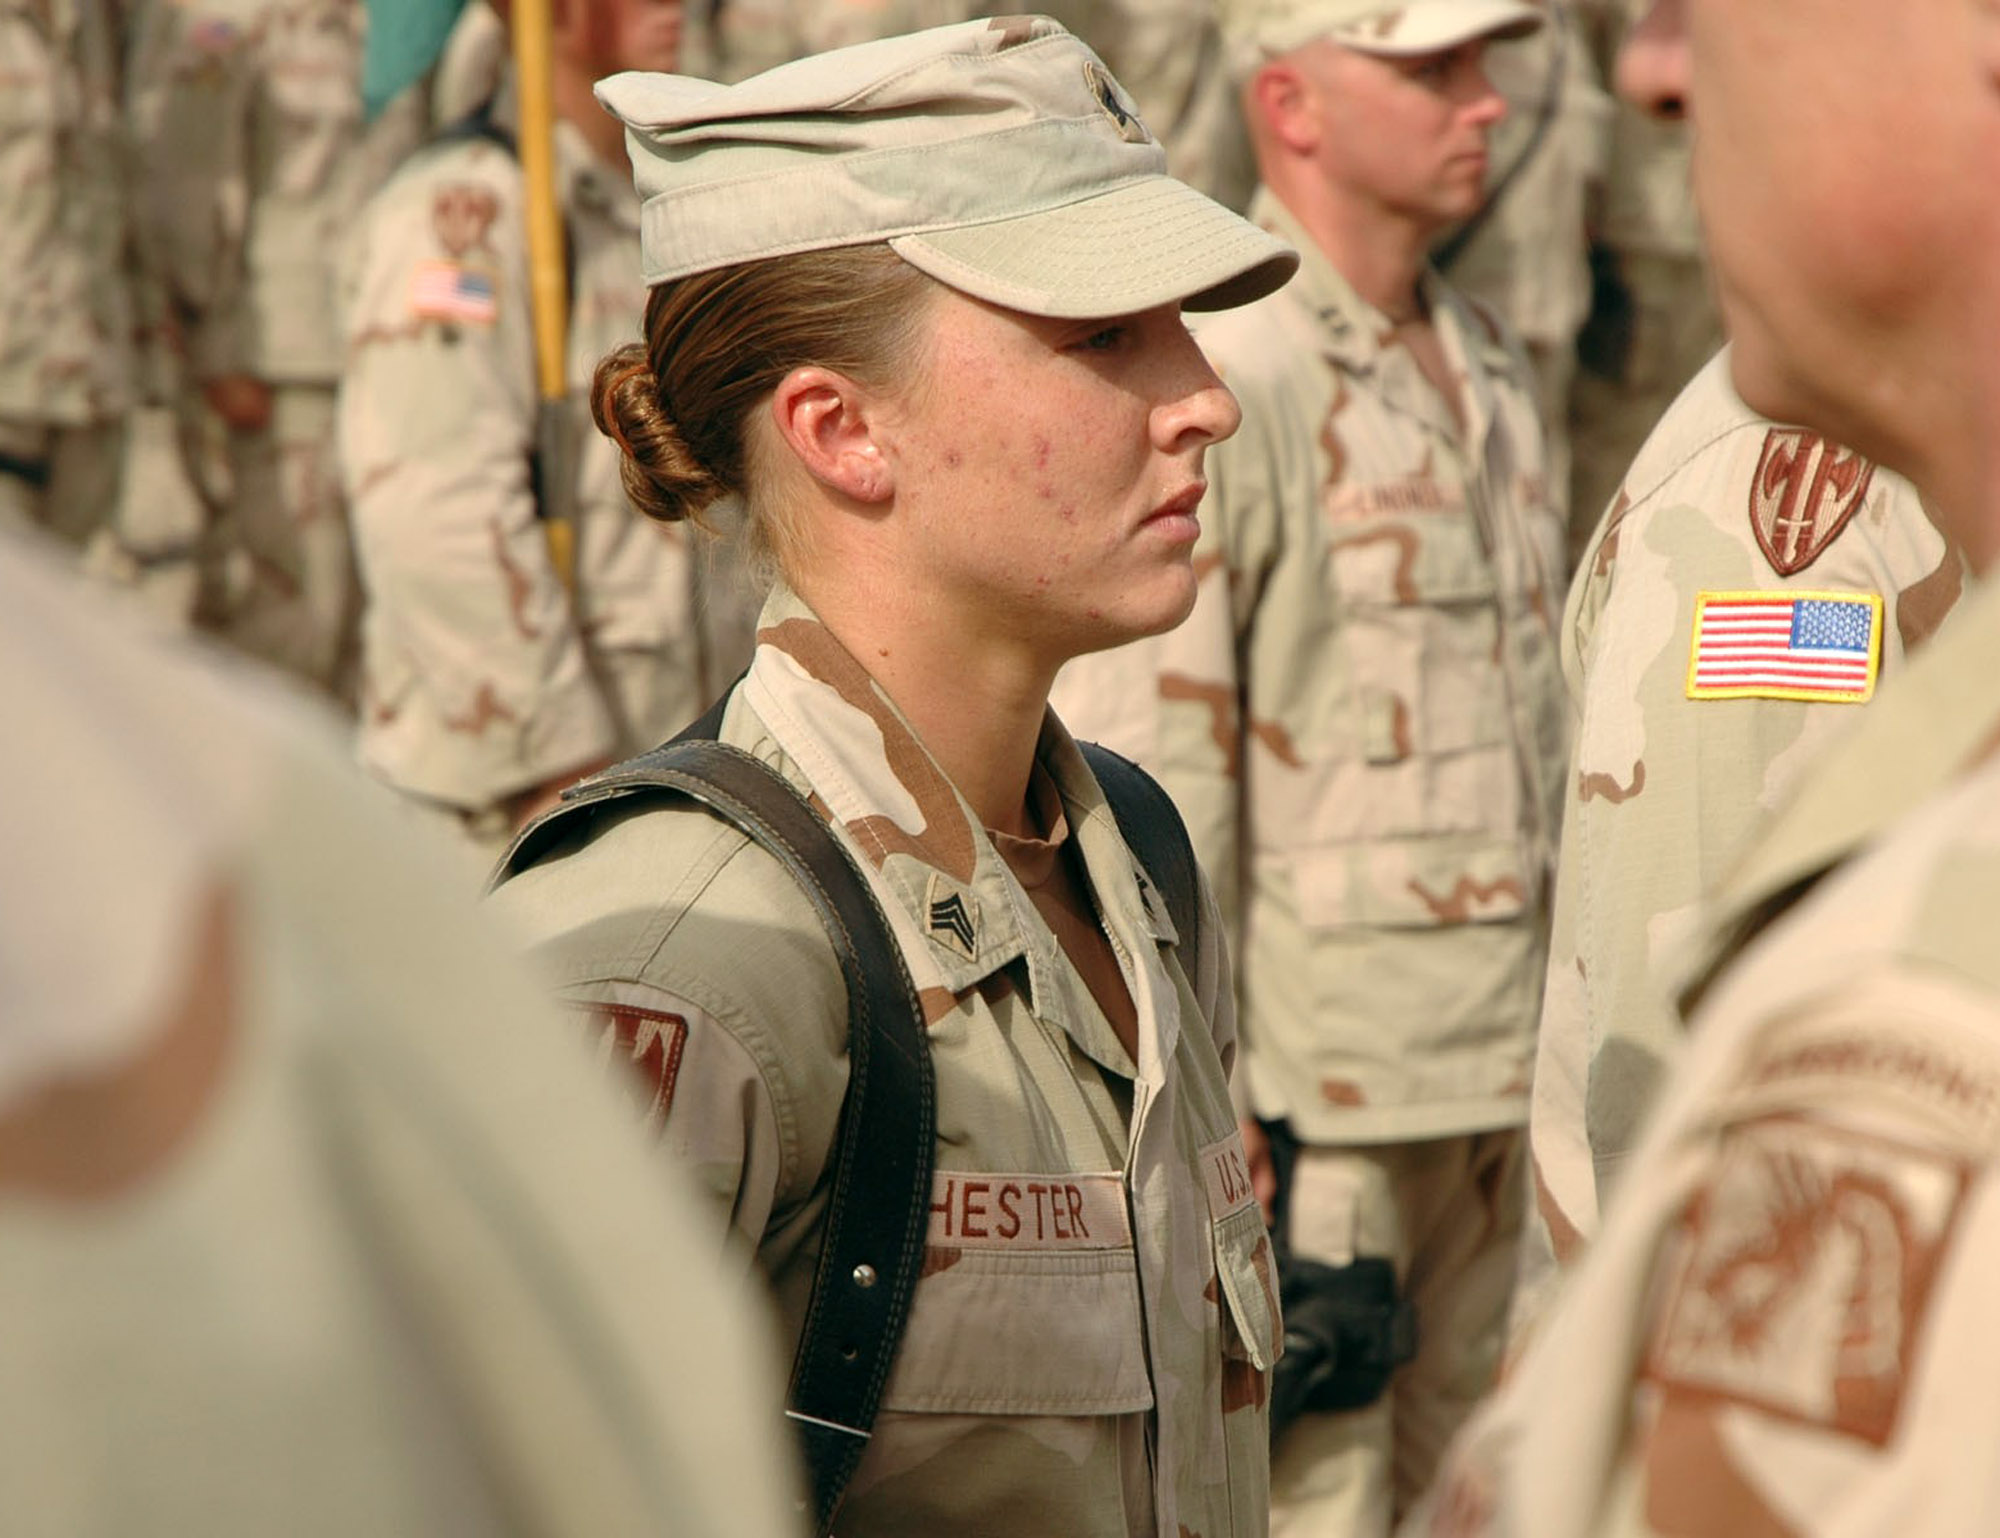 Kvinnliga soldater välkomnas inte i specialförbanden. Bilden: Sergeant Leigh Ann Hester.